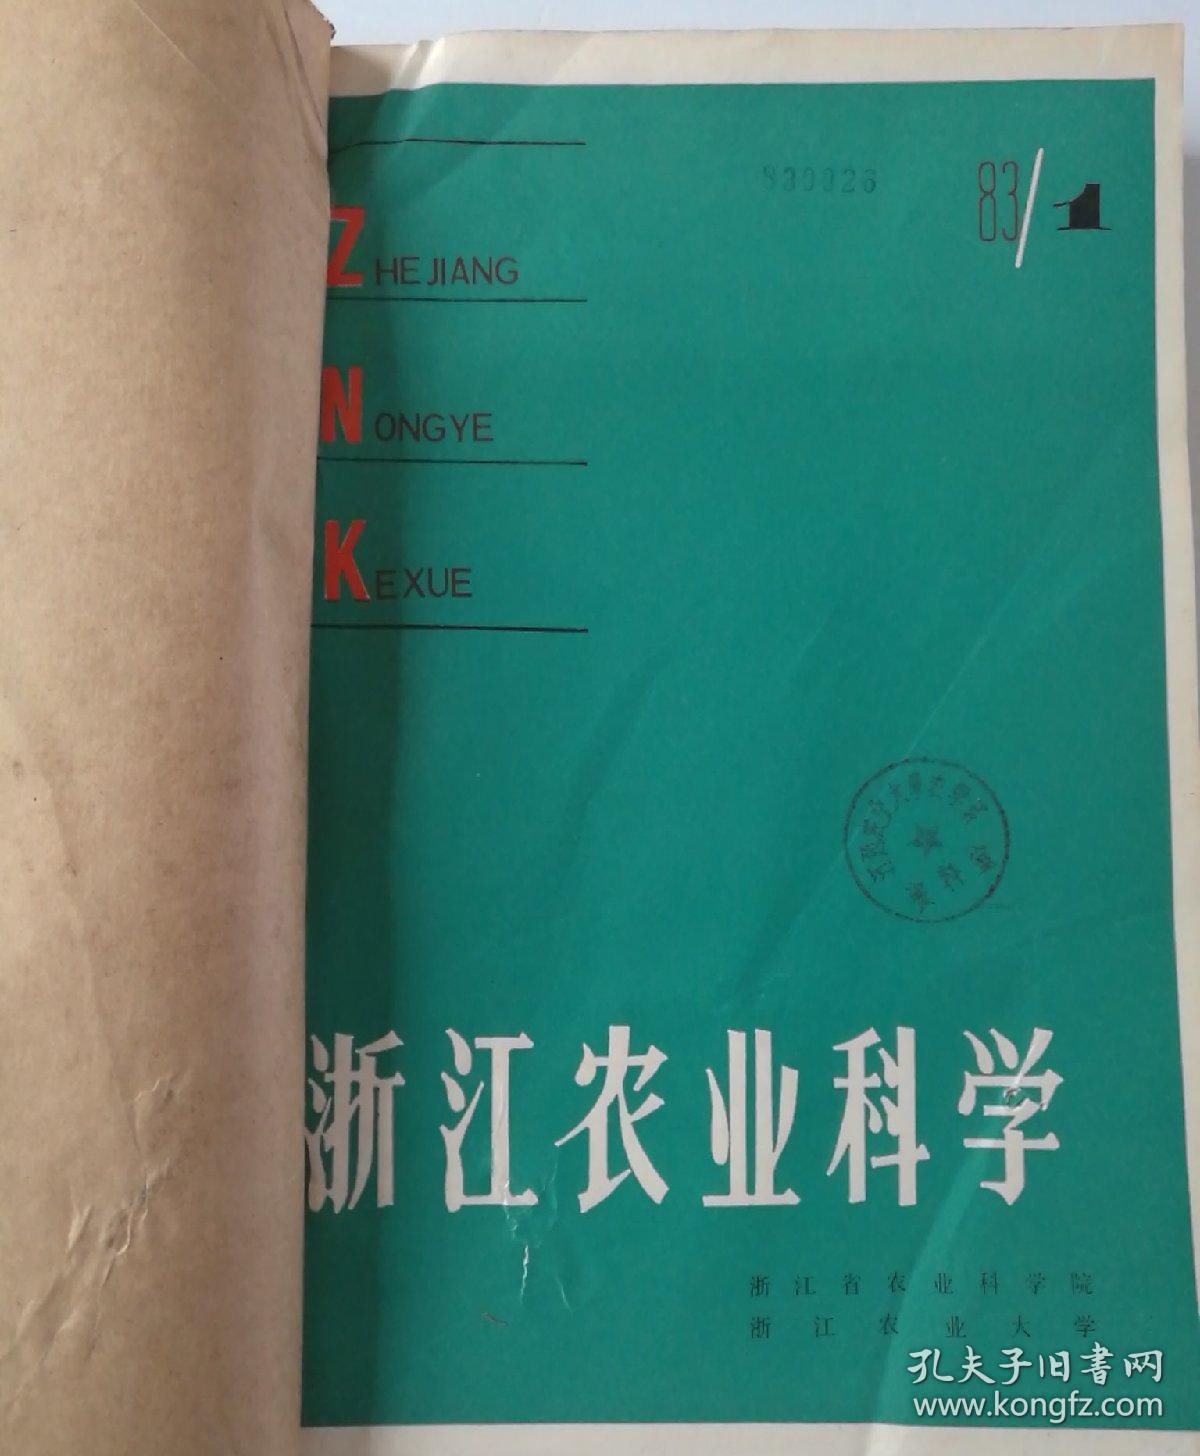 浙江农业科学(双月刊)   1983年(1一6)期   合订本  馆藏